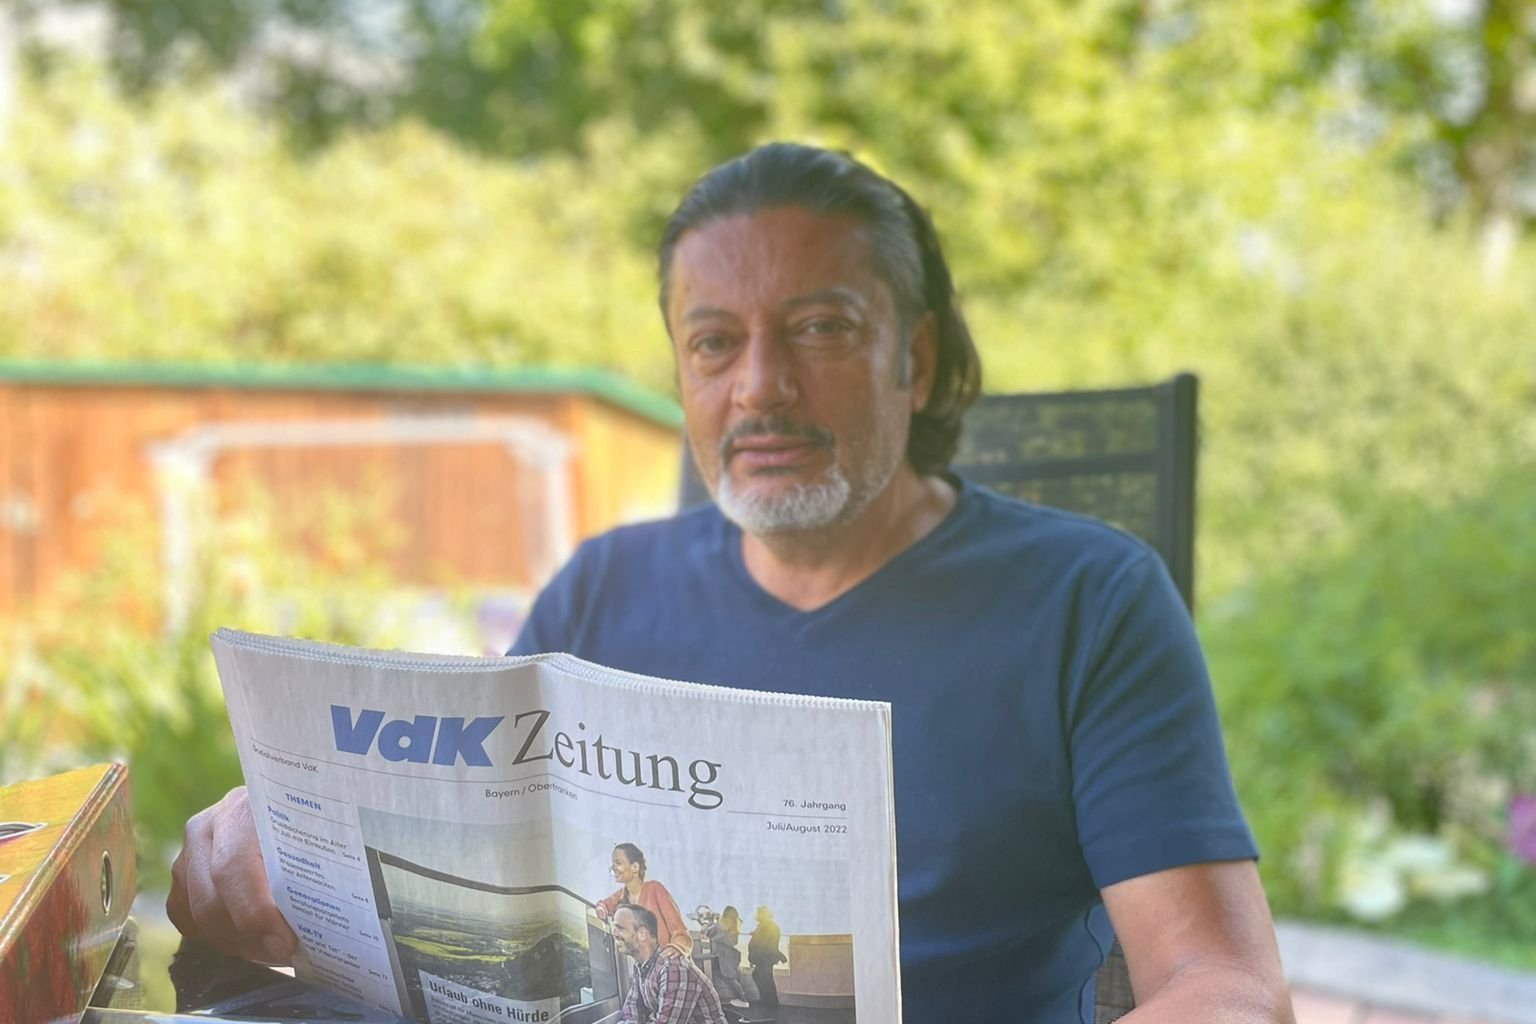 Selim Toksöz beim Lesen der VdK-Zeitung in einem Garten.